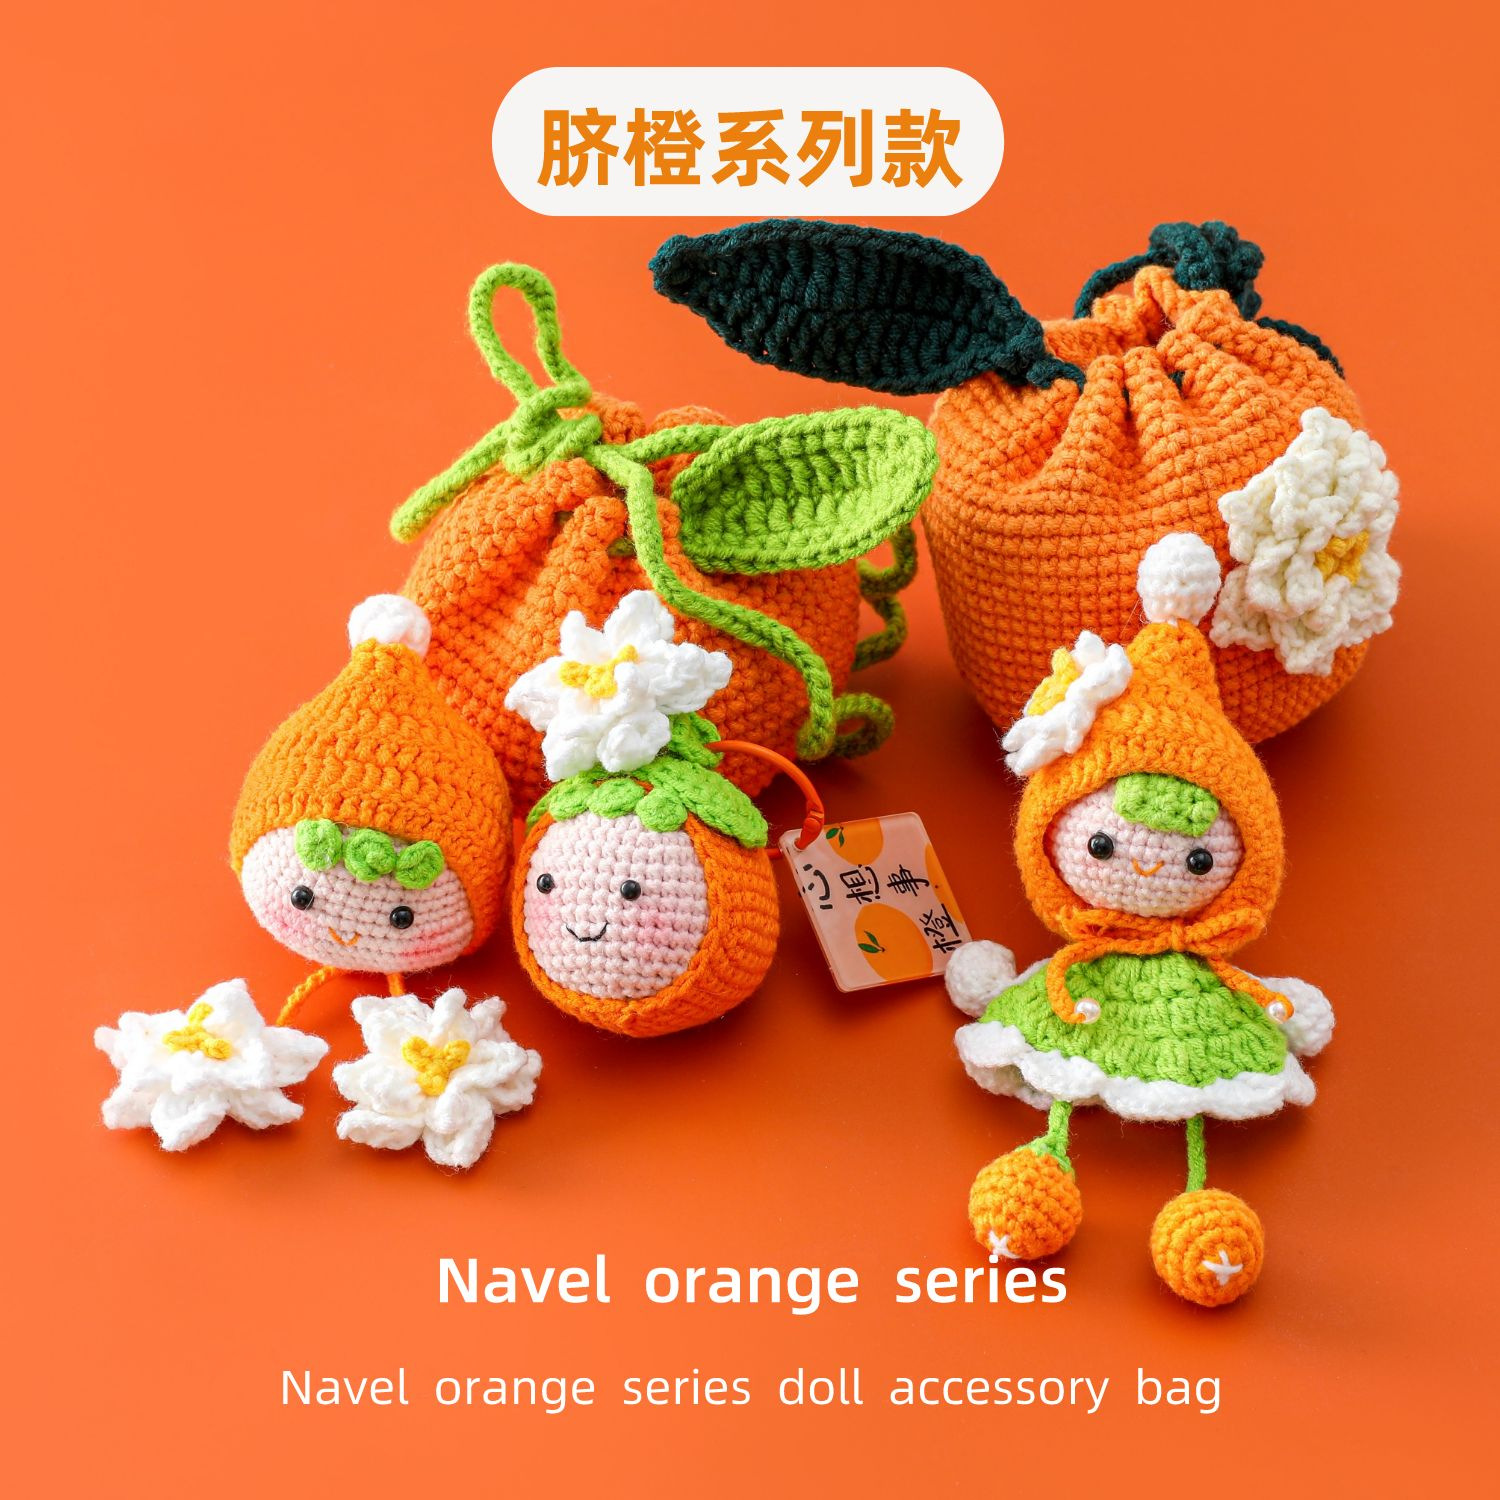 网红纯手工编织橙子橘子脐橙系列款栀子花娃娃挂件包包成品好寓意图